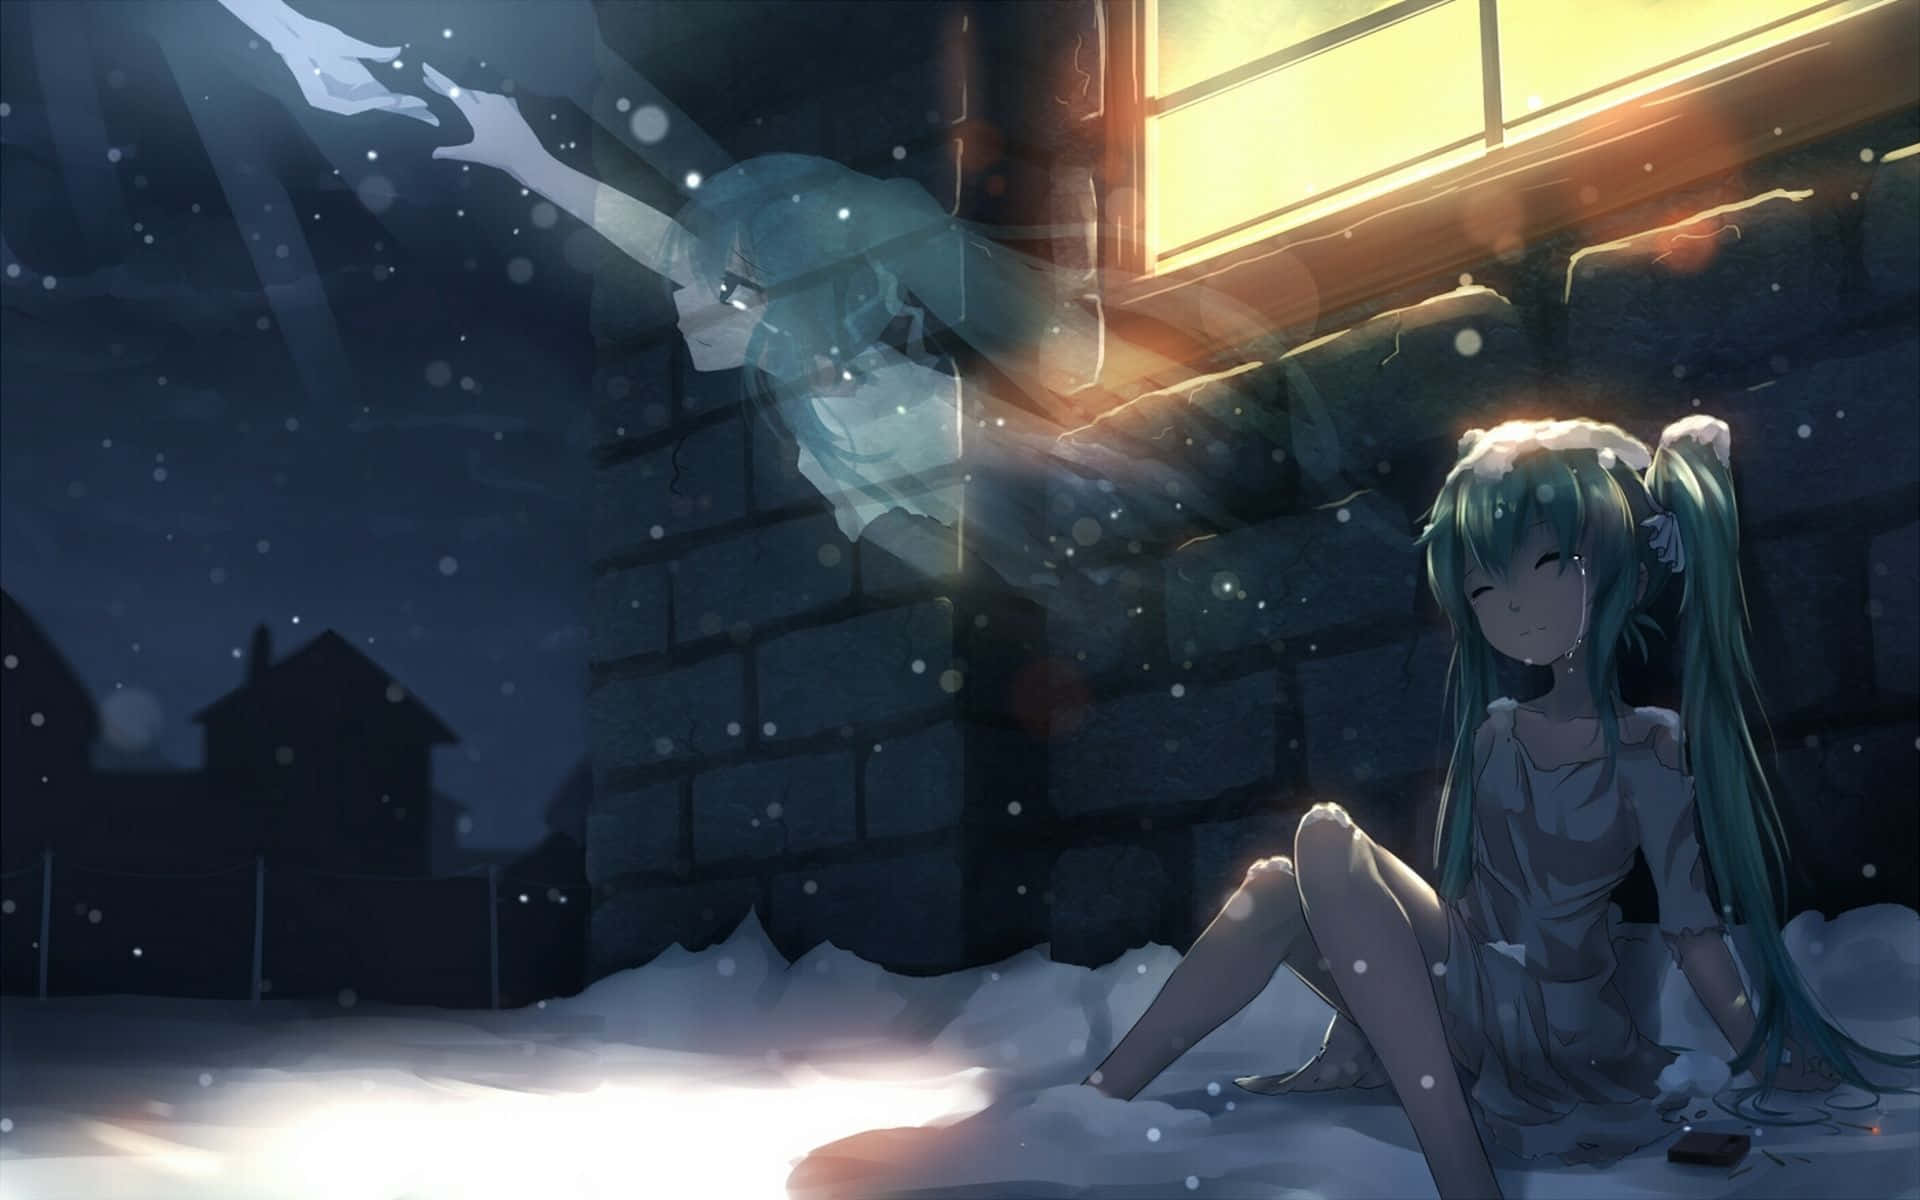 Sad Crying Anime Girl With A Spirit Wallpaper